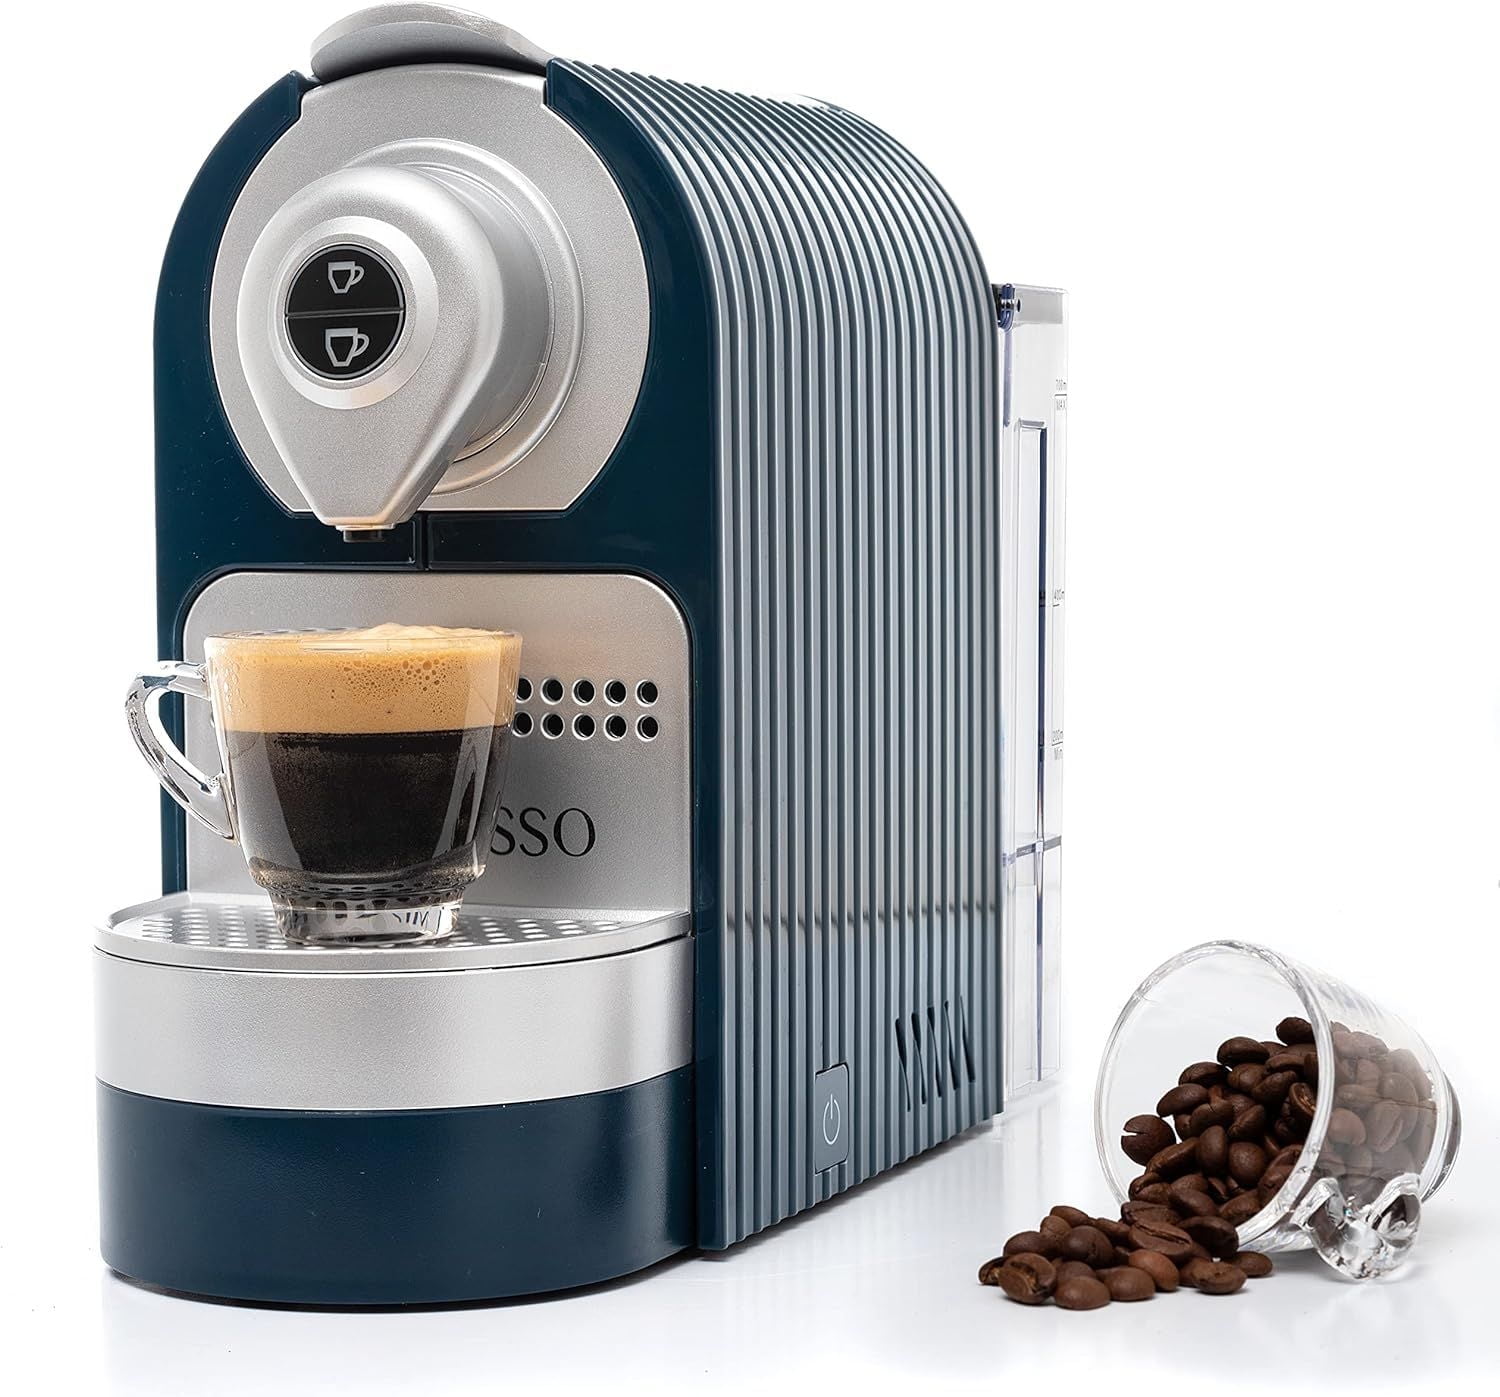 Mixpresso Máquina de café expreso para cápsulas compatibles con Nespresso,  cafetera de una sola porción programable para cápsulas de espresso, bomba